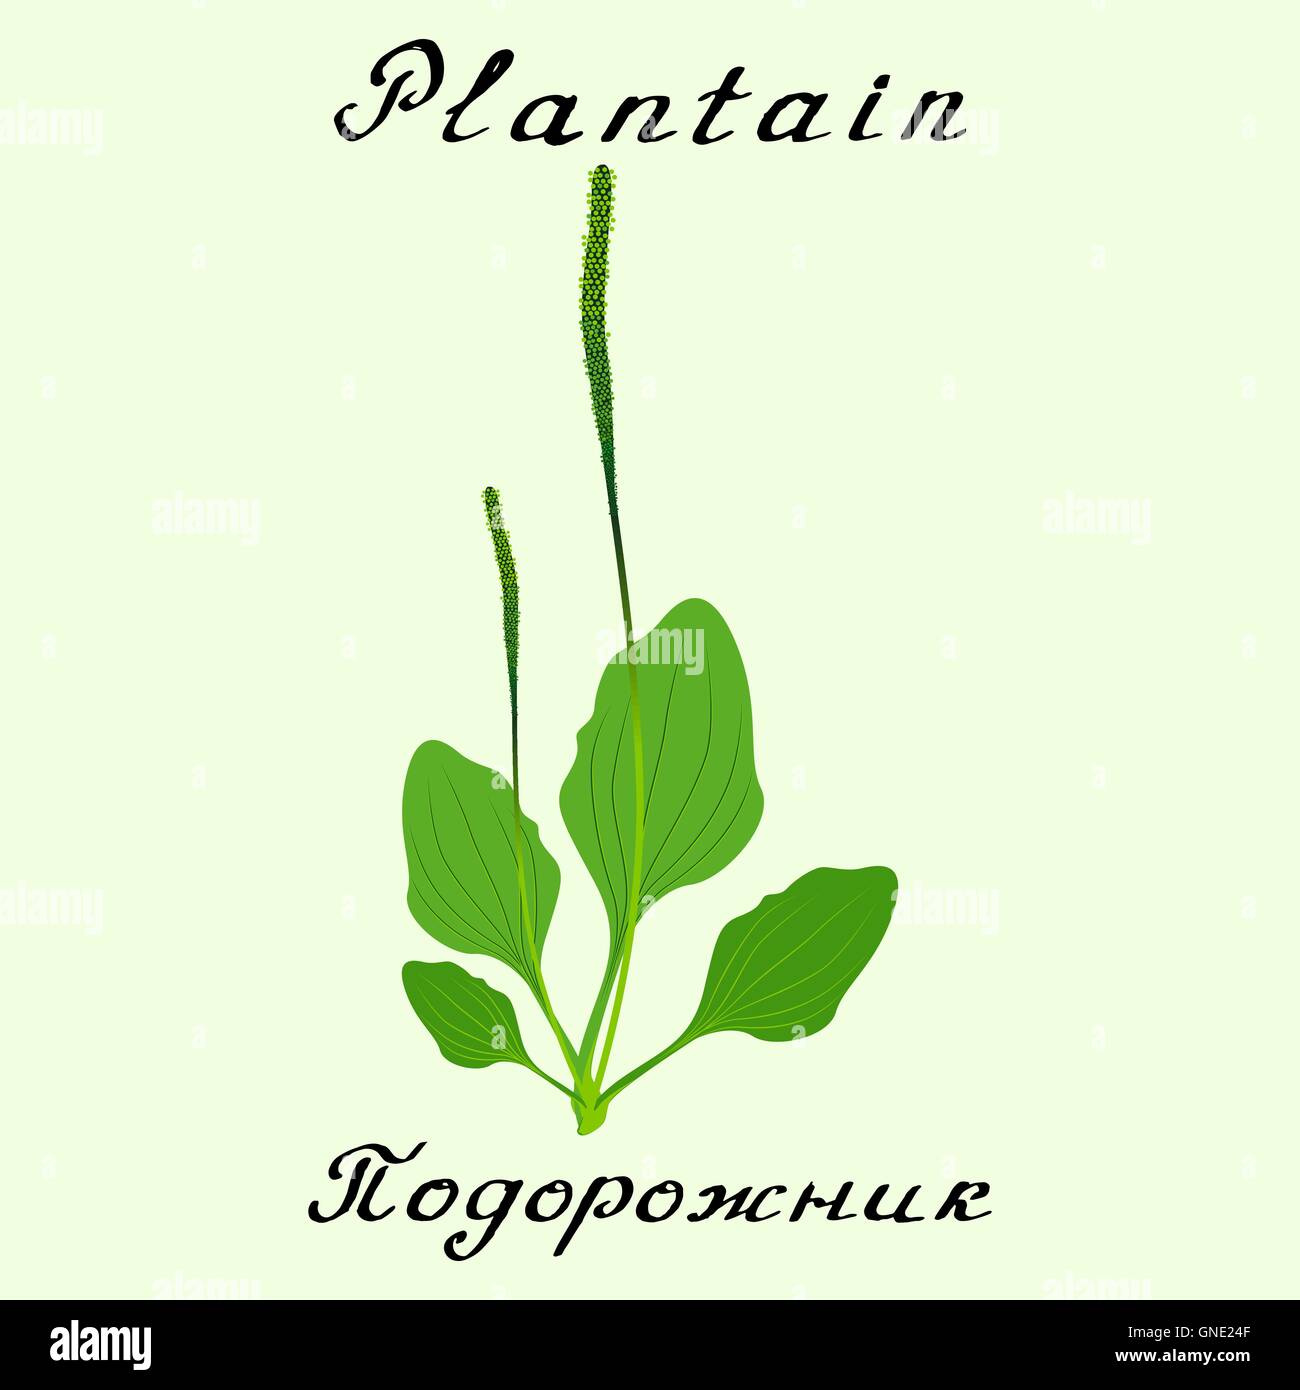 Le plantain. Dessin vectoriel et lettrage à la main Illustration de Vecteur